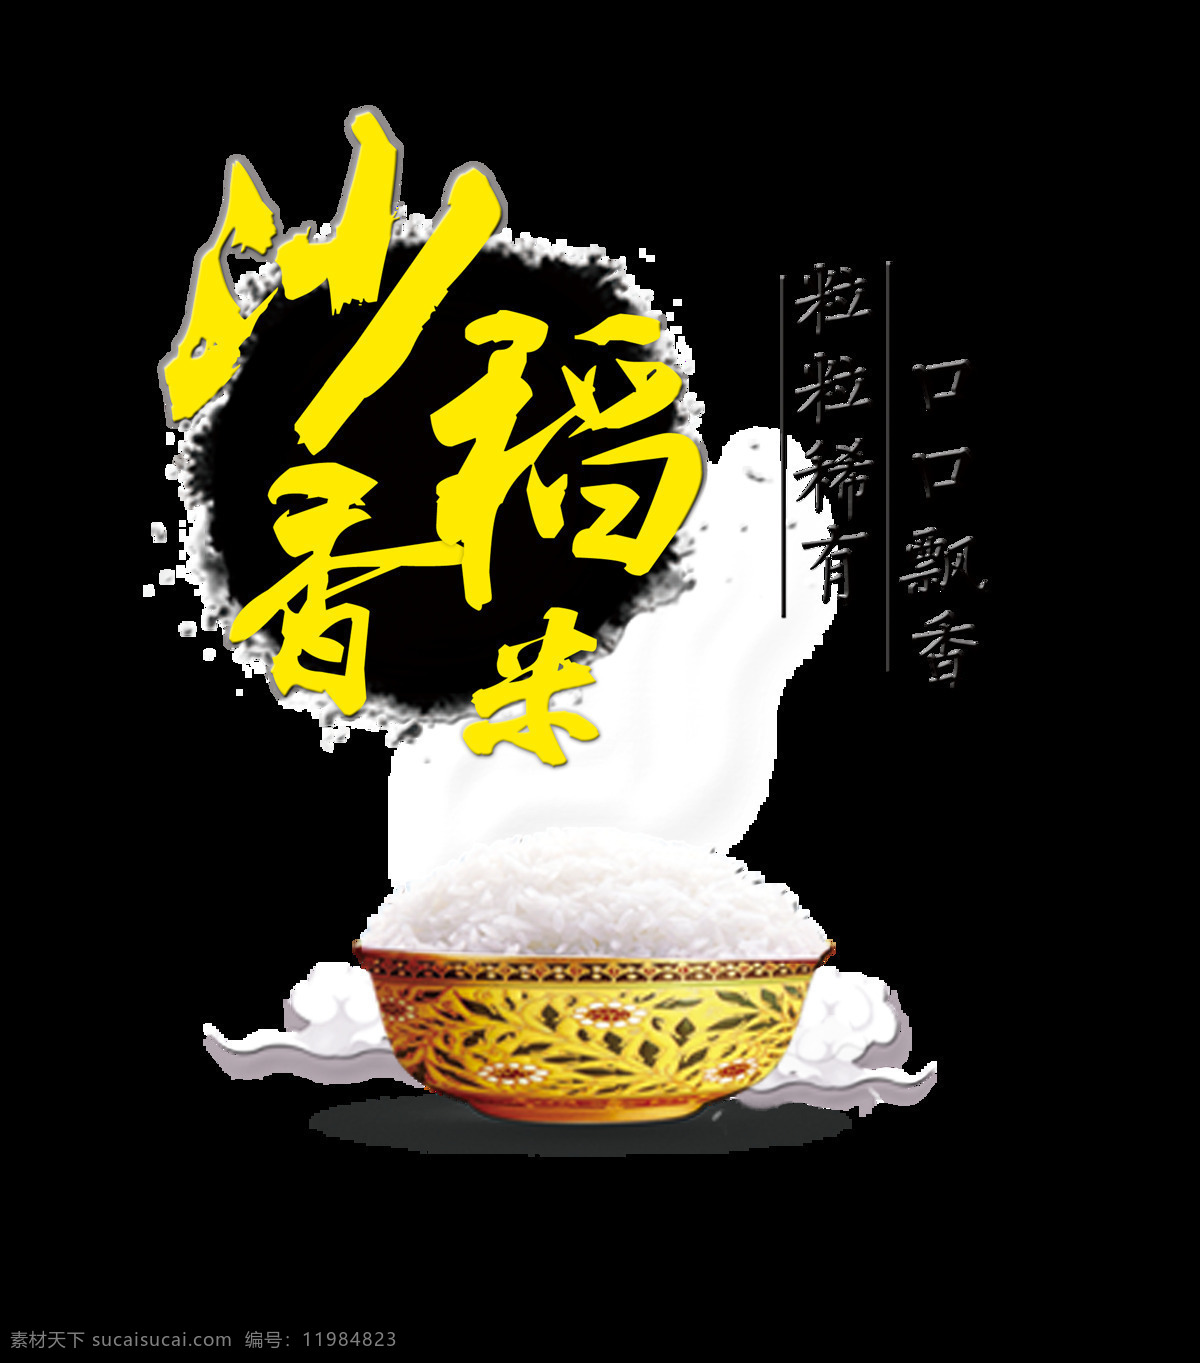 沙 香 稻米 口口 飘香 艺术 字 字体 大米 美食 沙香稻米 口口飘香 粒粒稀有 艺术字 海报